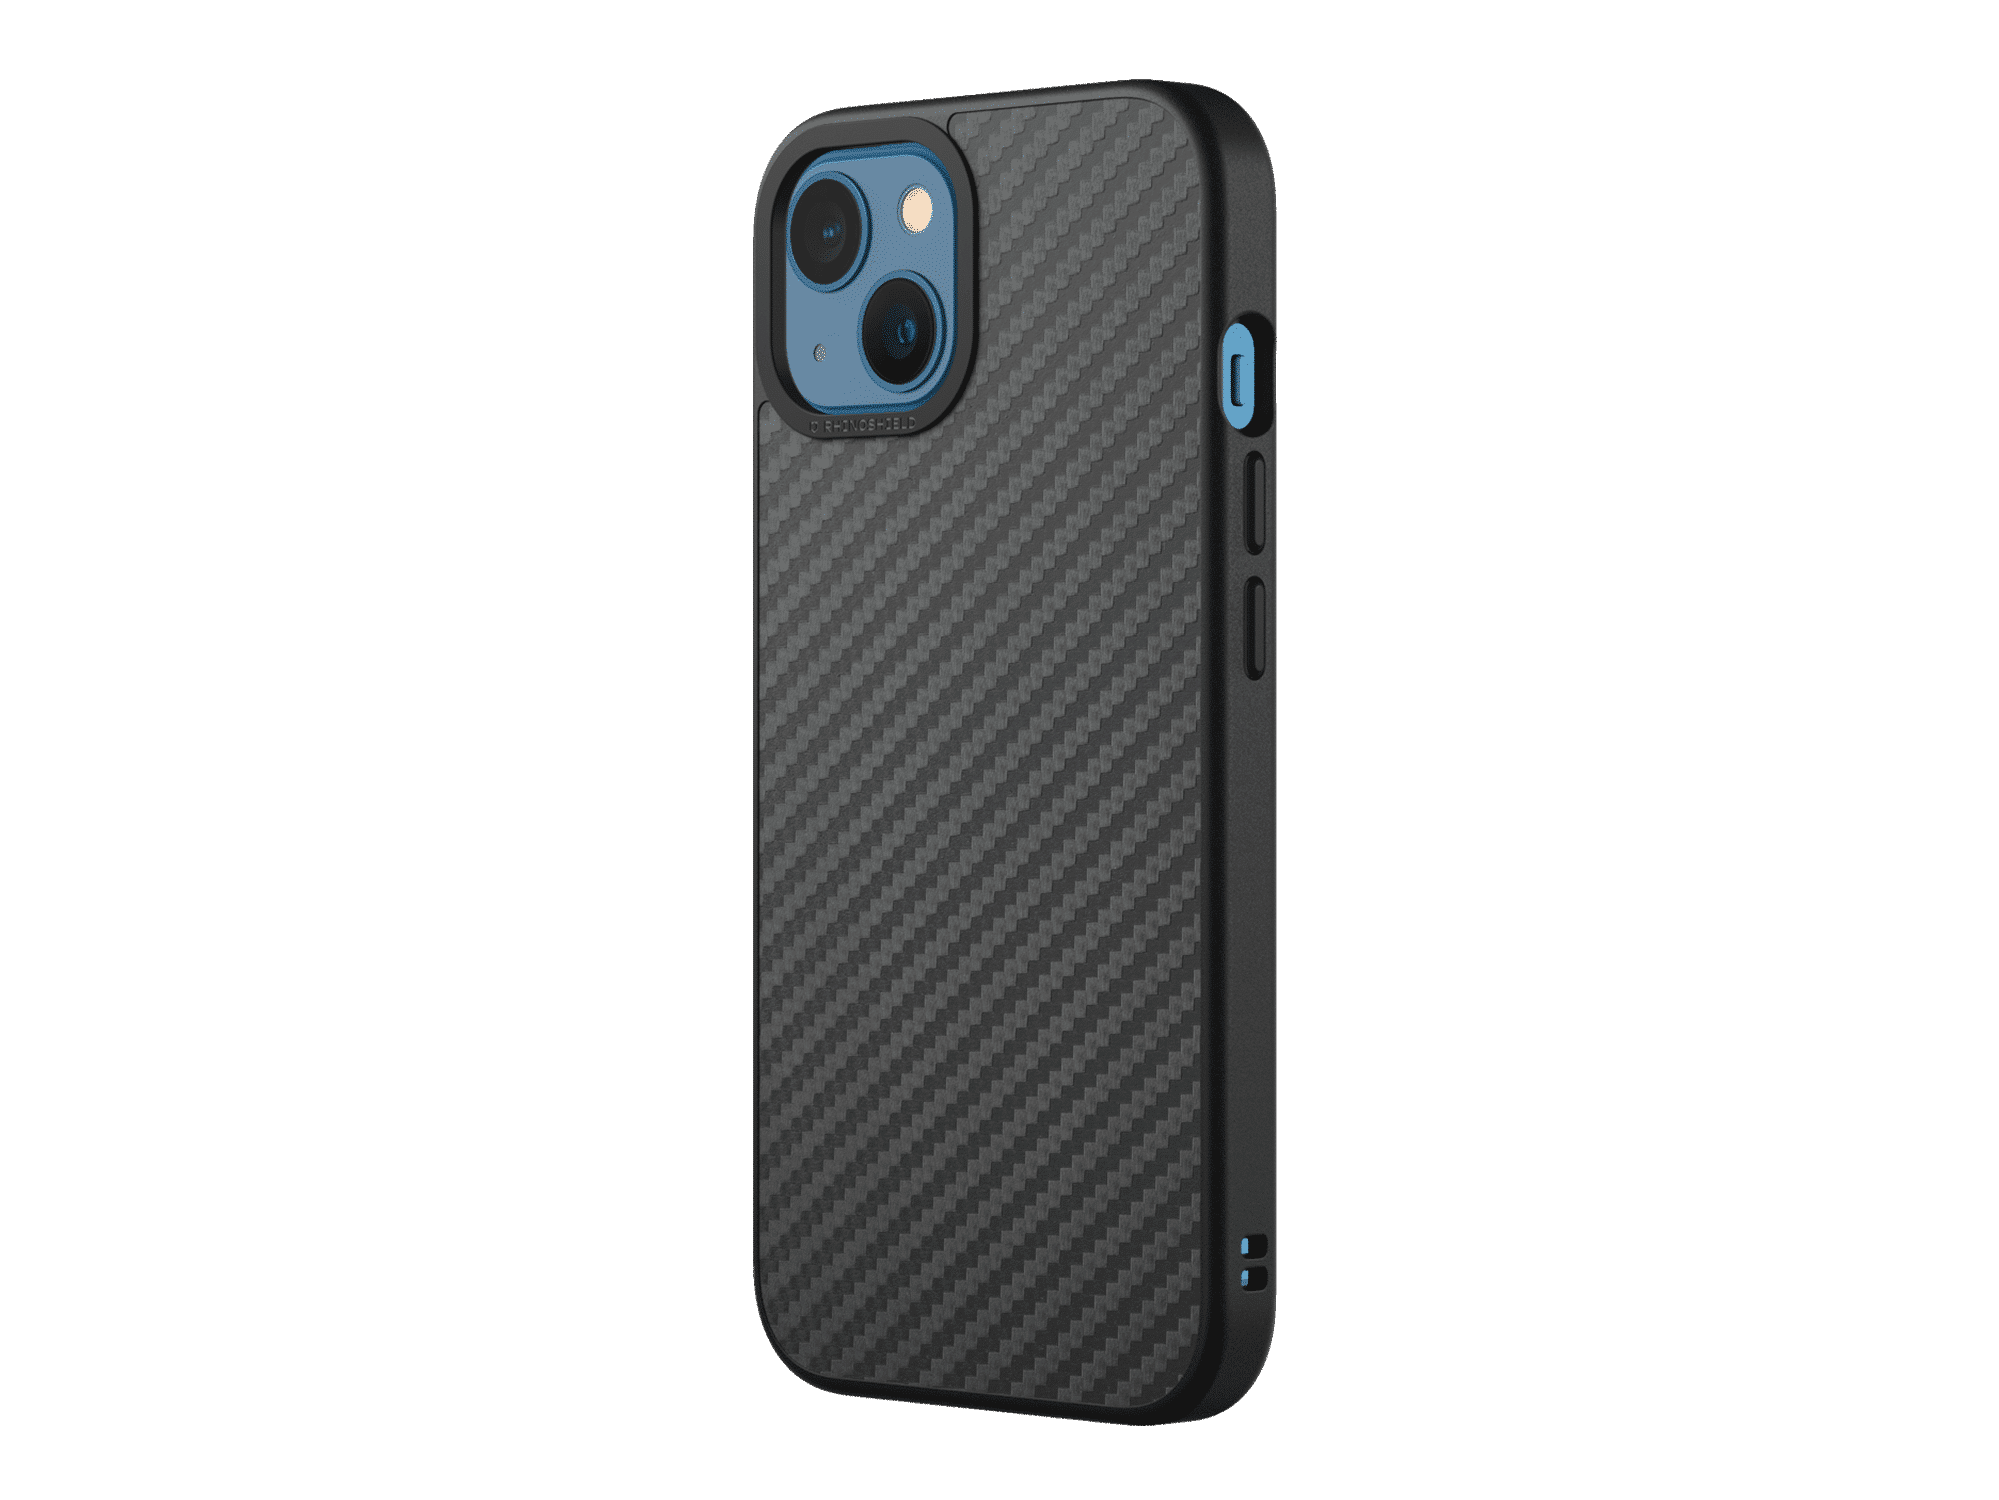 เคส RhinoShield รุ่น SolidSuit - iPhone 13 - Carbon / Black